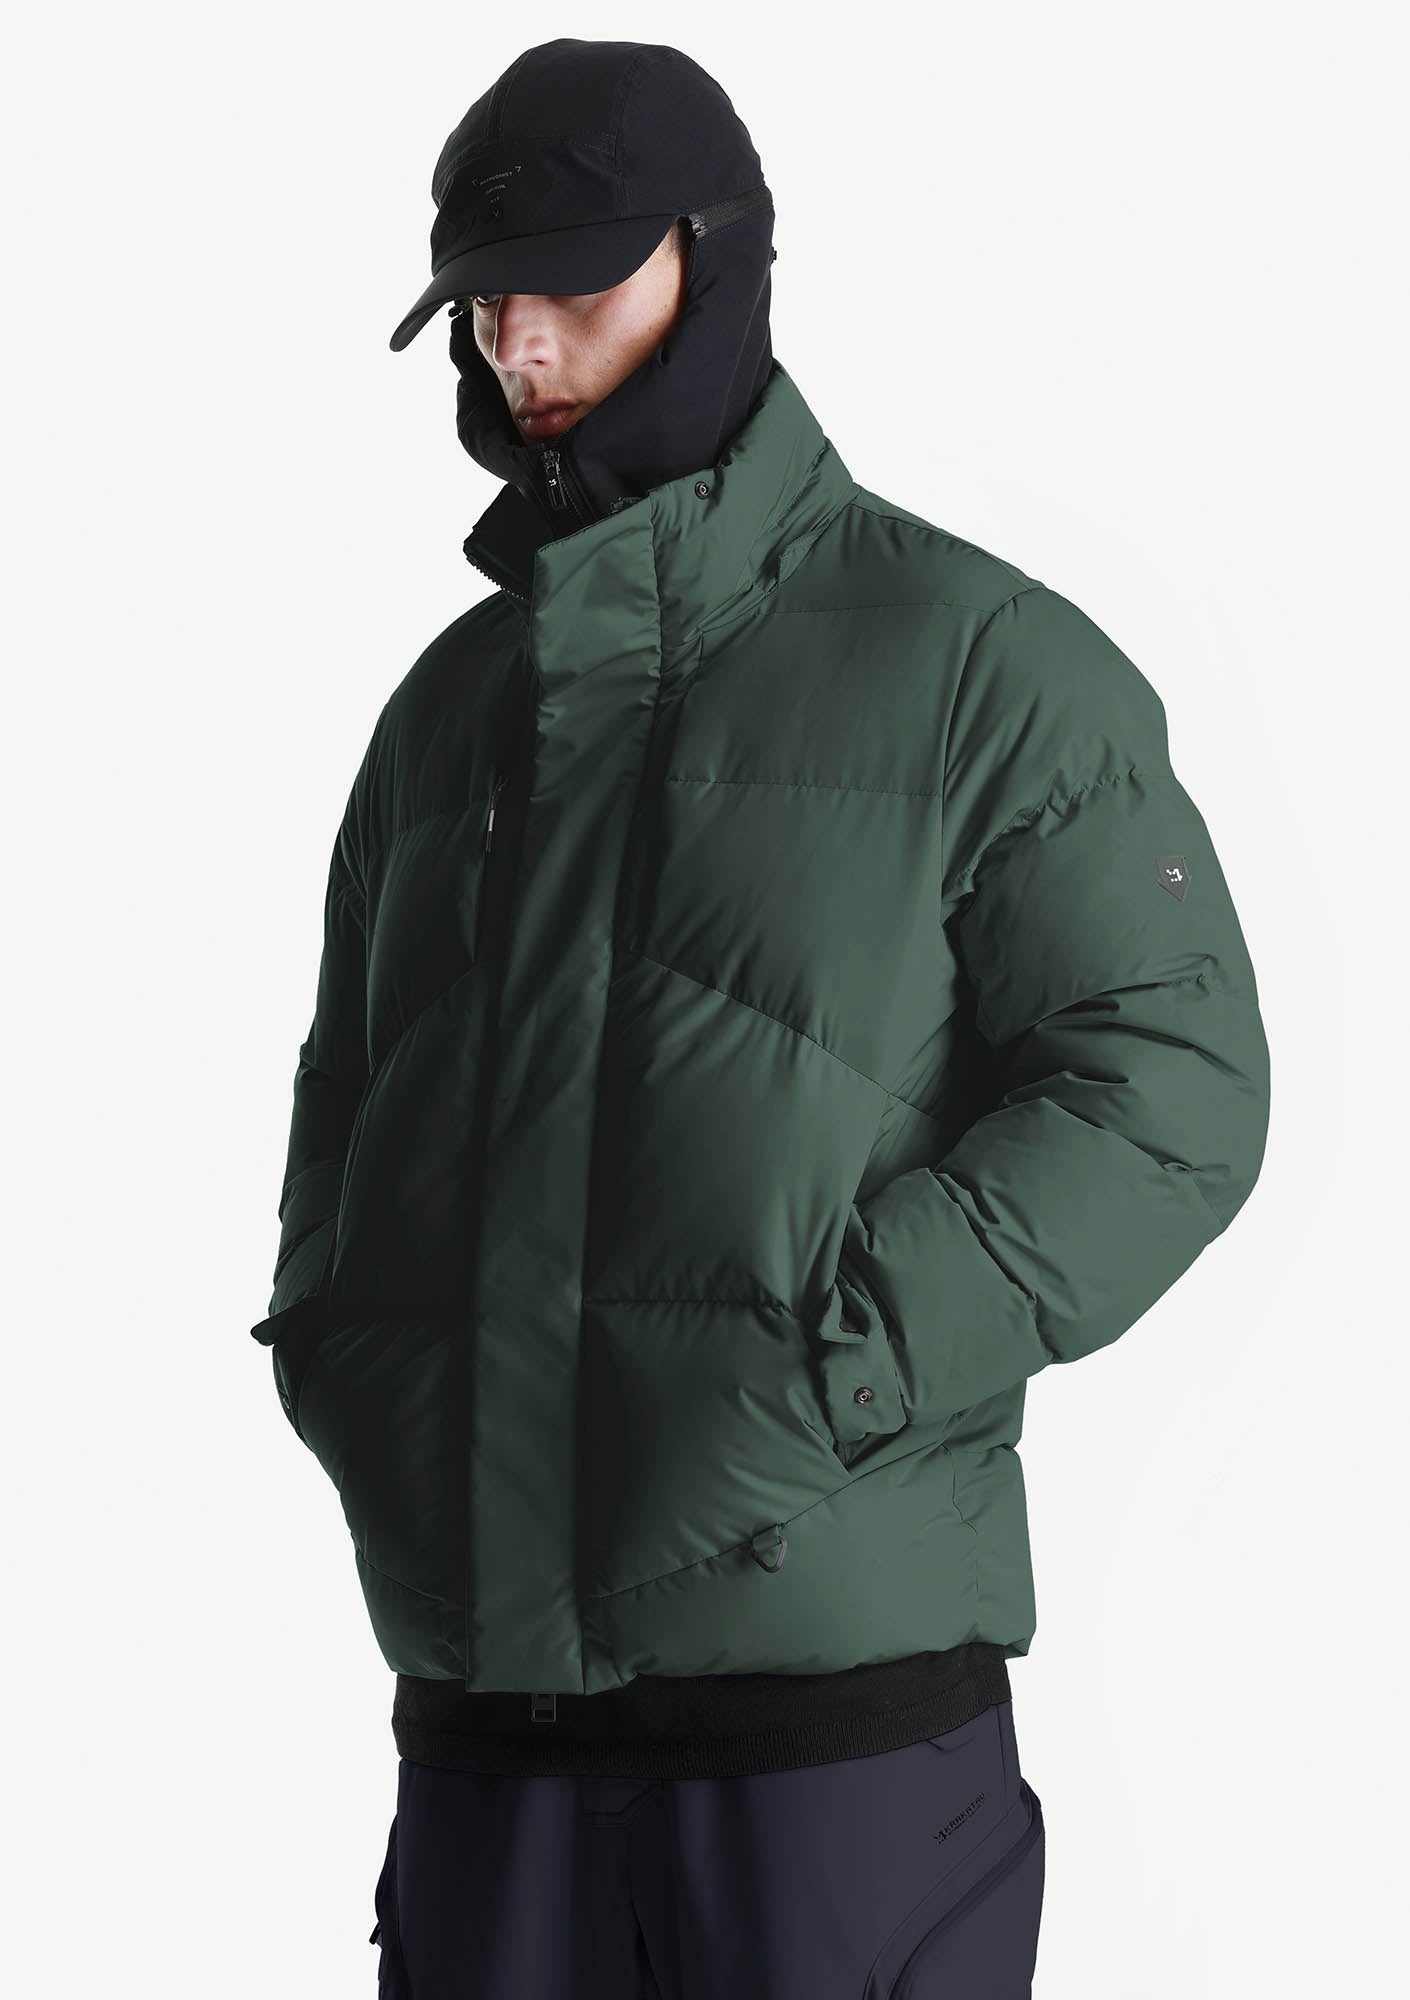 AITKEN Waterproof Short Puffer Jacket Qm440-52